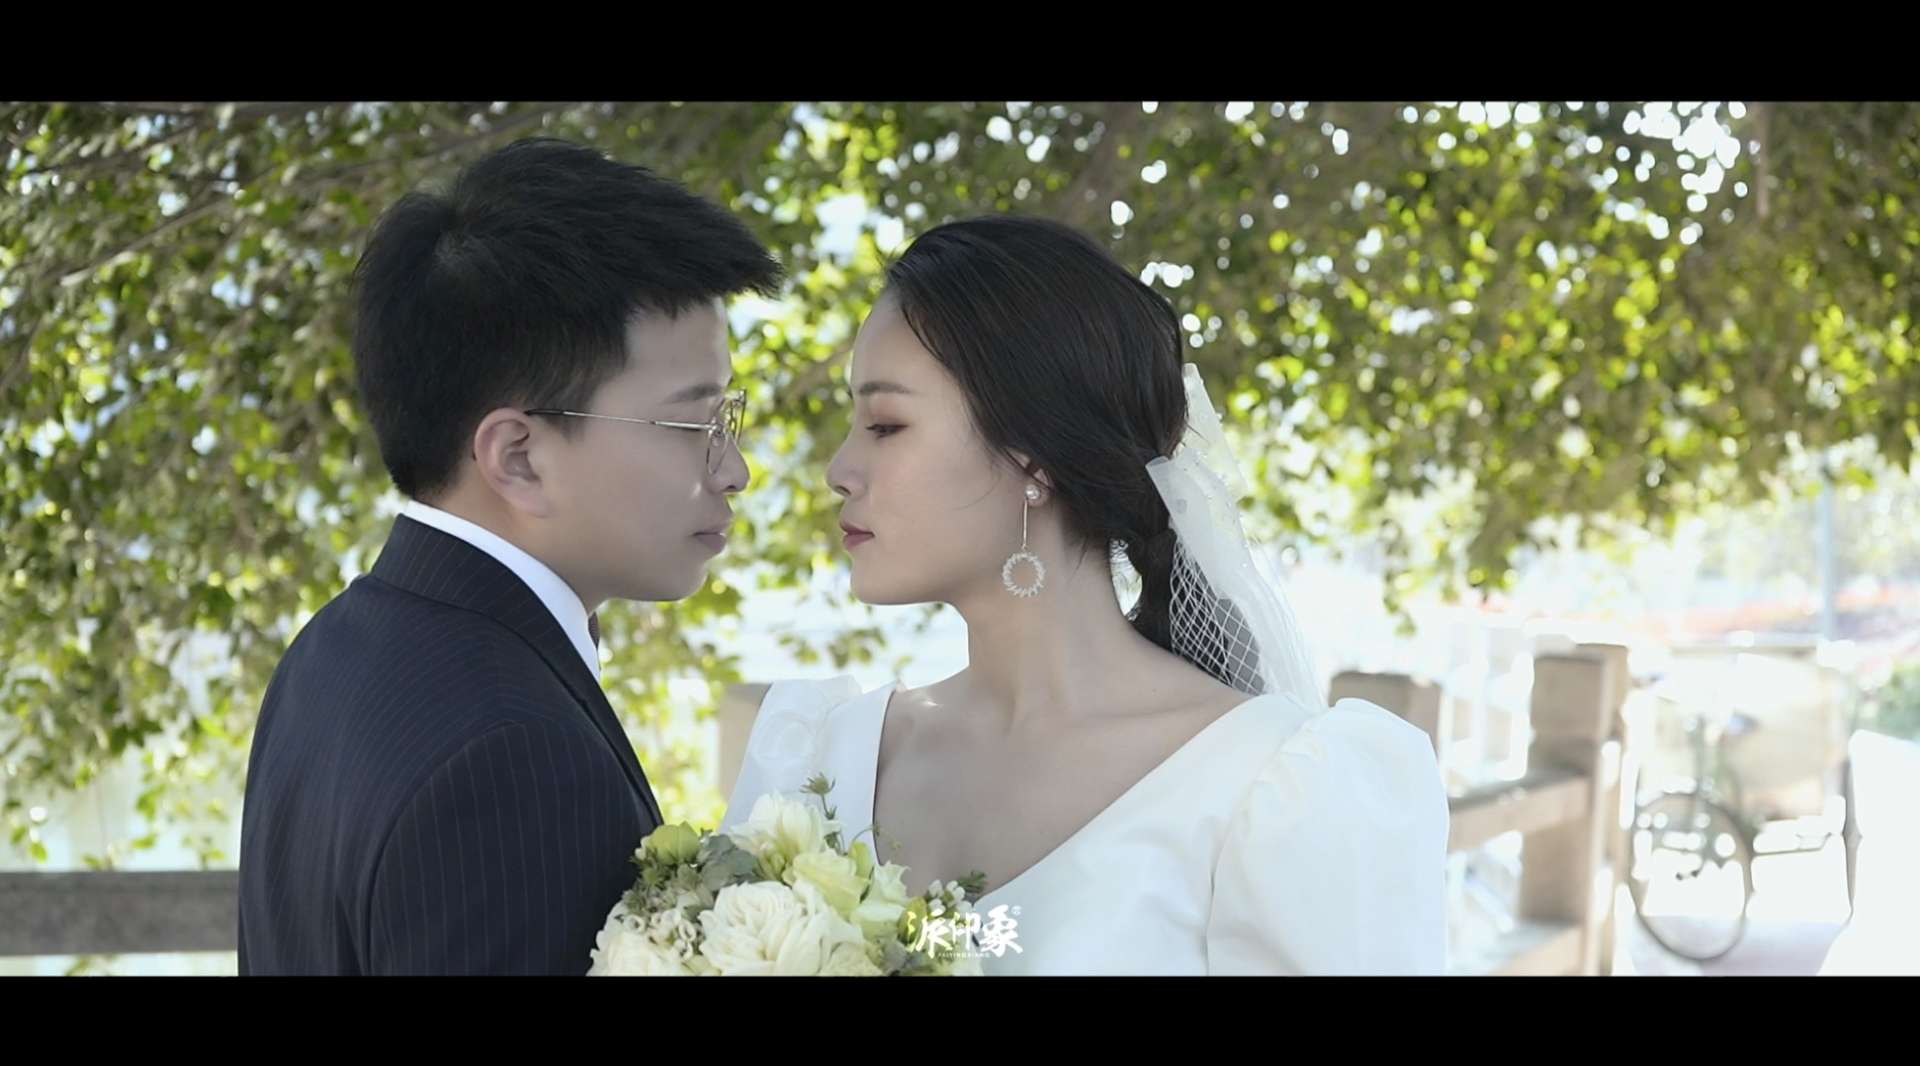 派印象婚礼视频「张贤泽&徐梦碧」